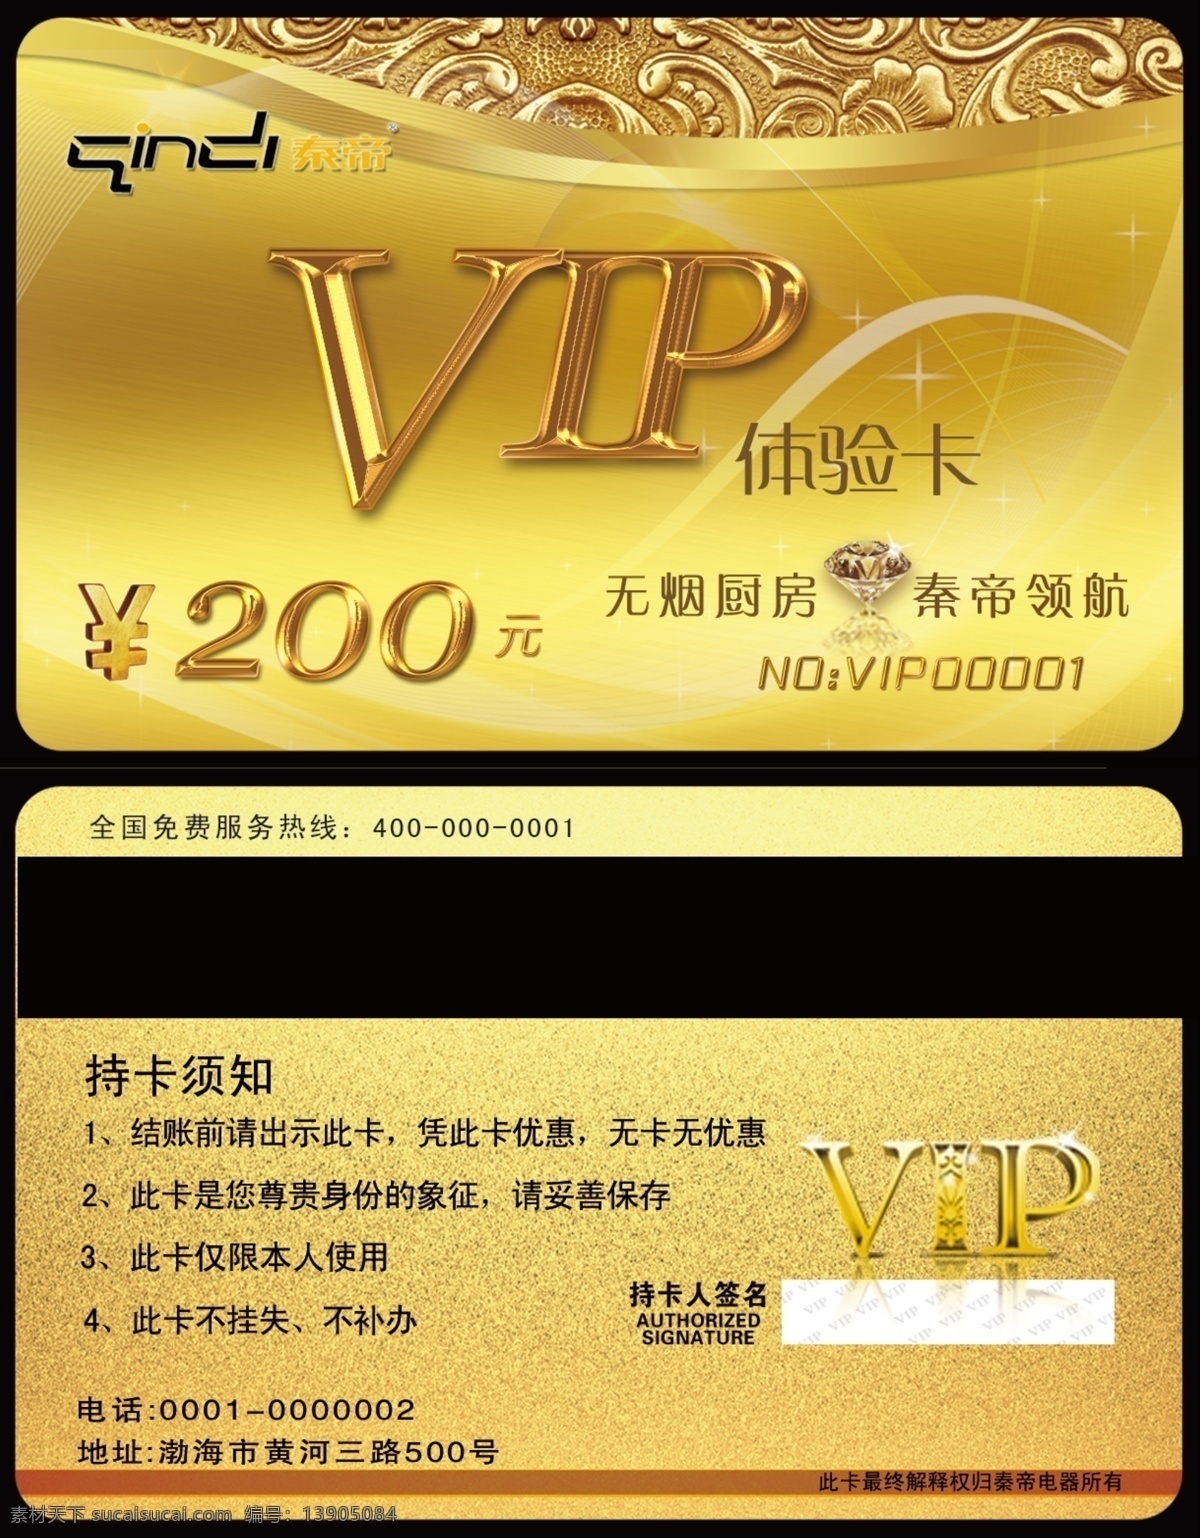 vip卡 vip体验卡 广告设计模板 会员卡 名片卡片 名片类 体验卡 源文件 vip 体验 卡 模板下载 家电类 名片卡 广告设计名片